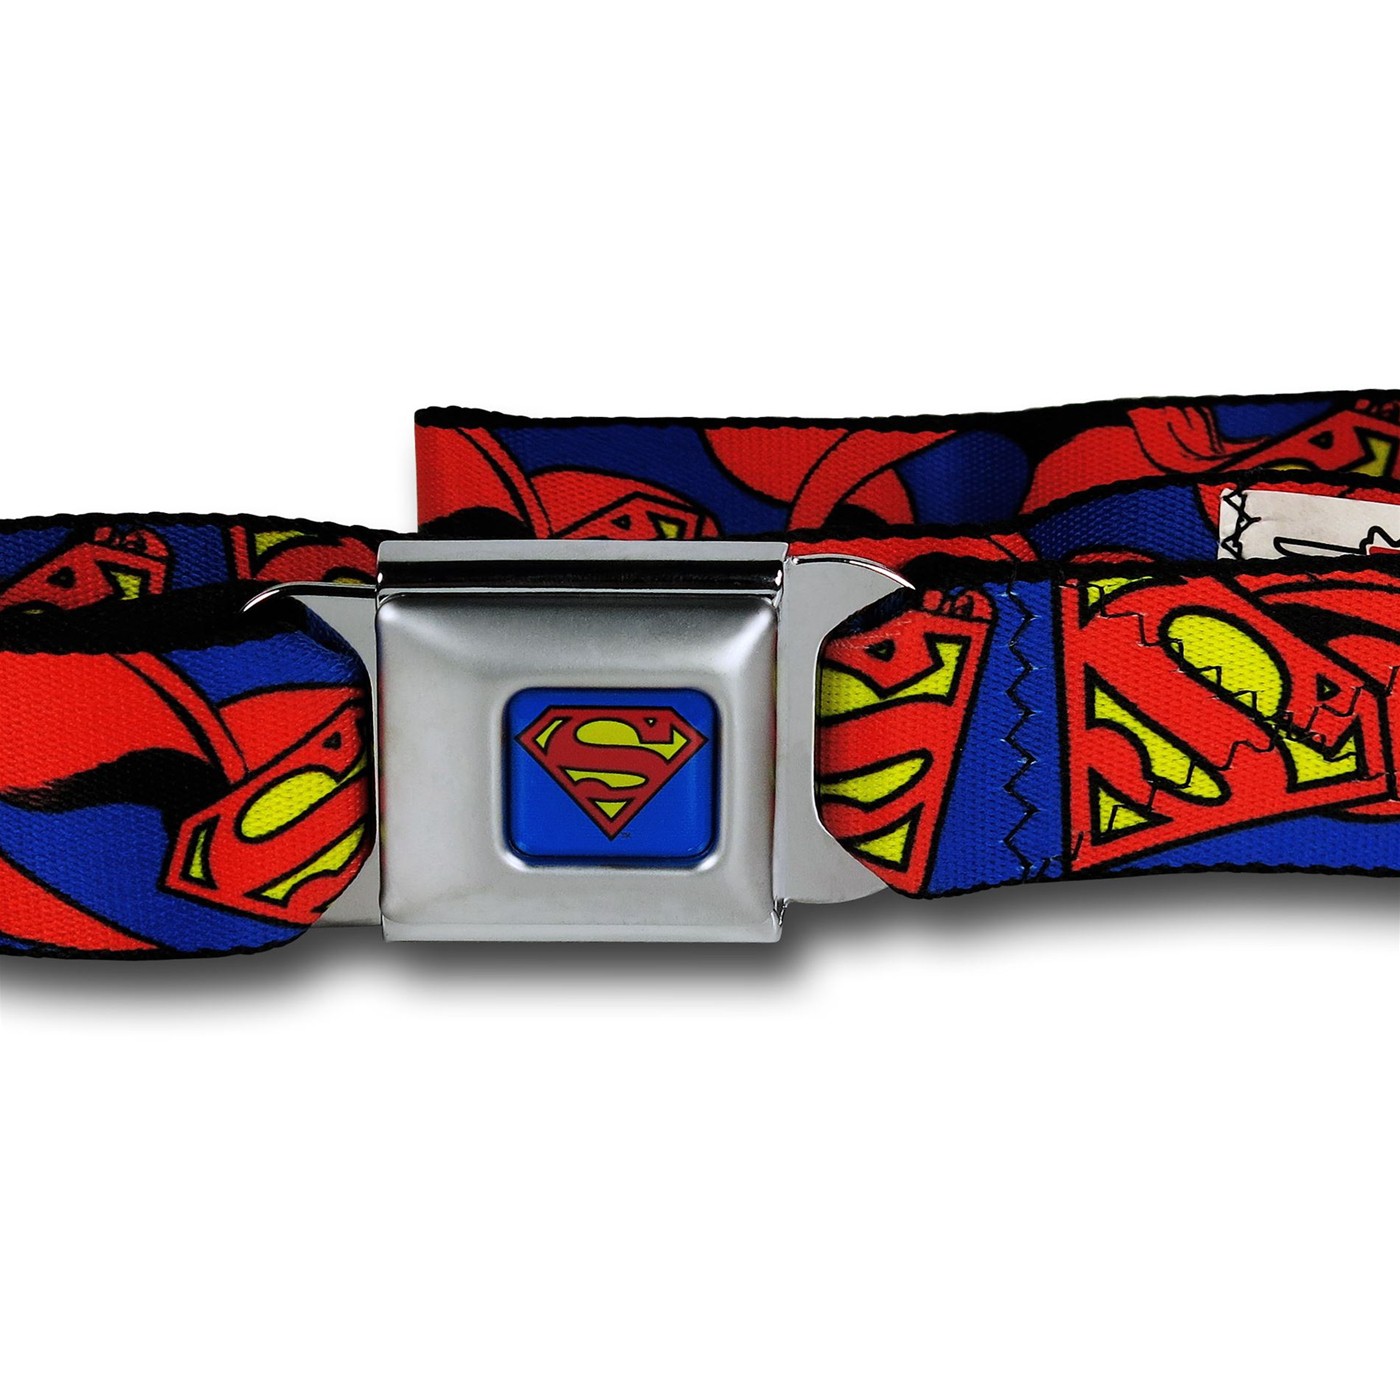 Superman Symbols and Capes Seatbelt Belt